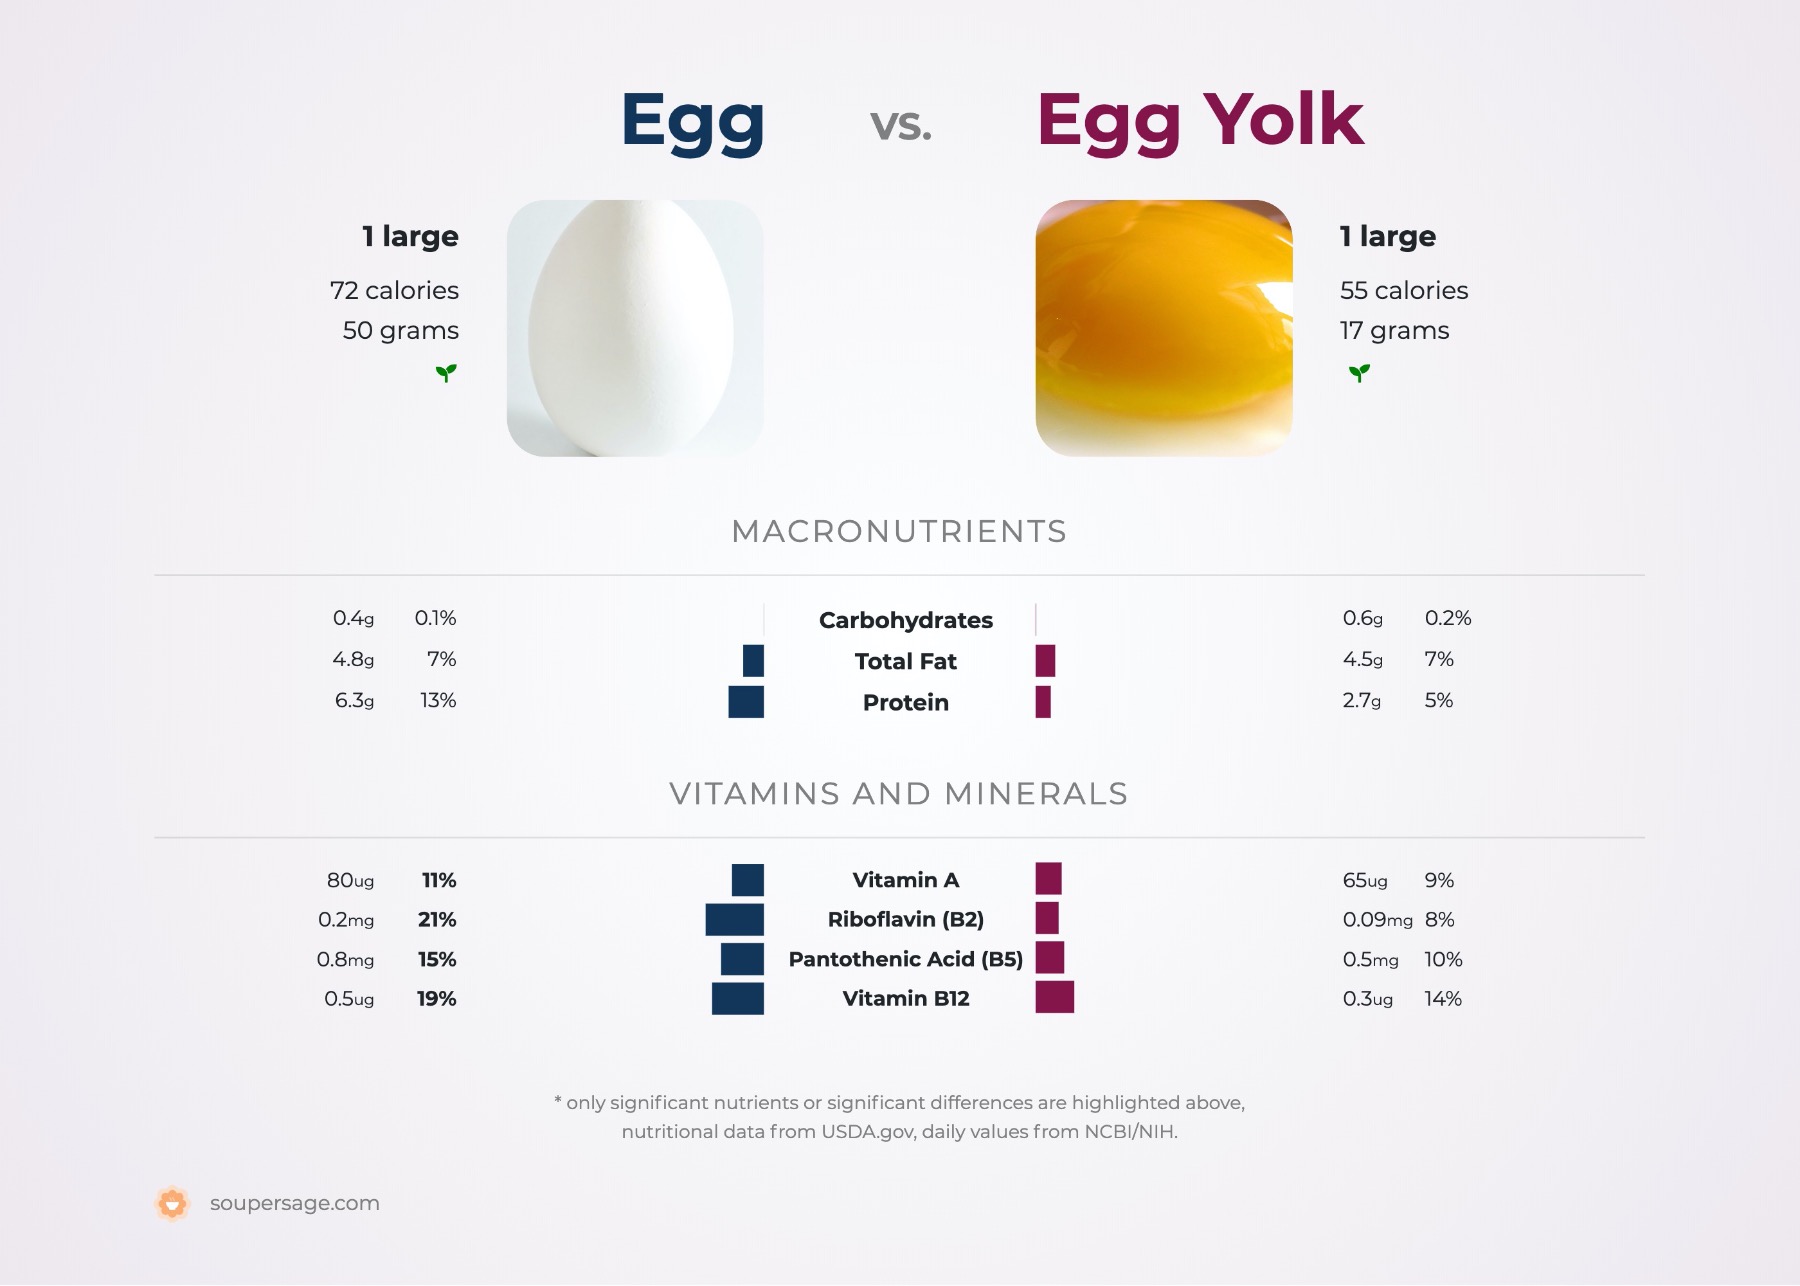 nutrition comparison of egg vs. egg yolk